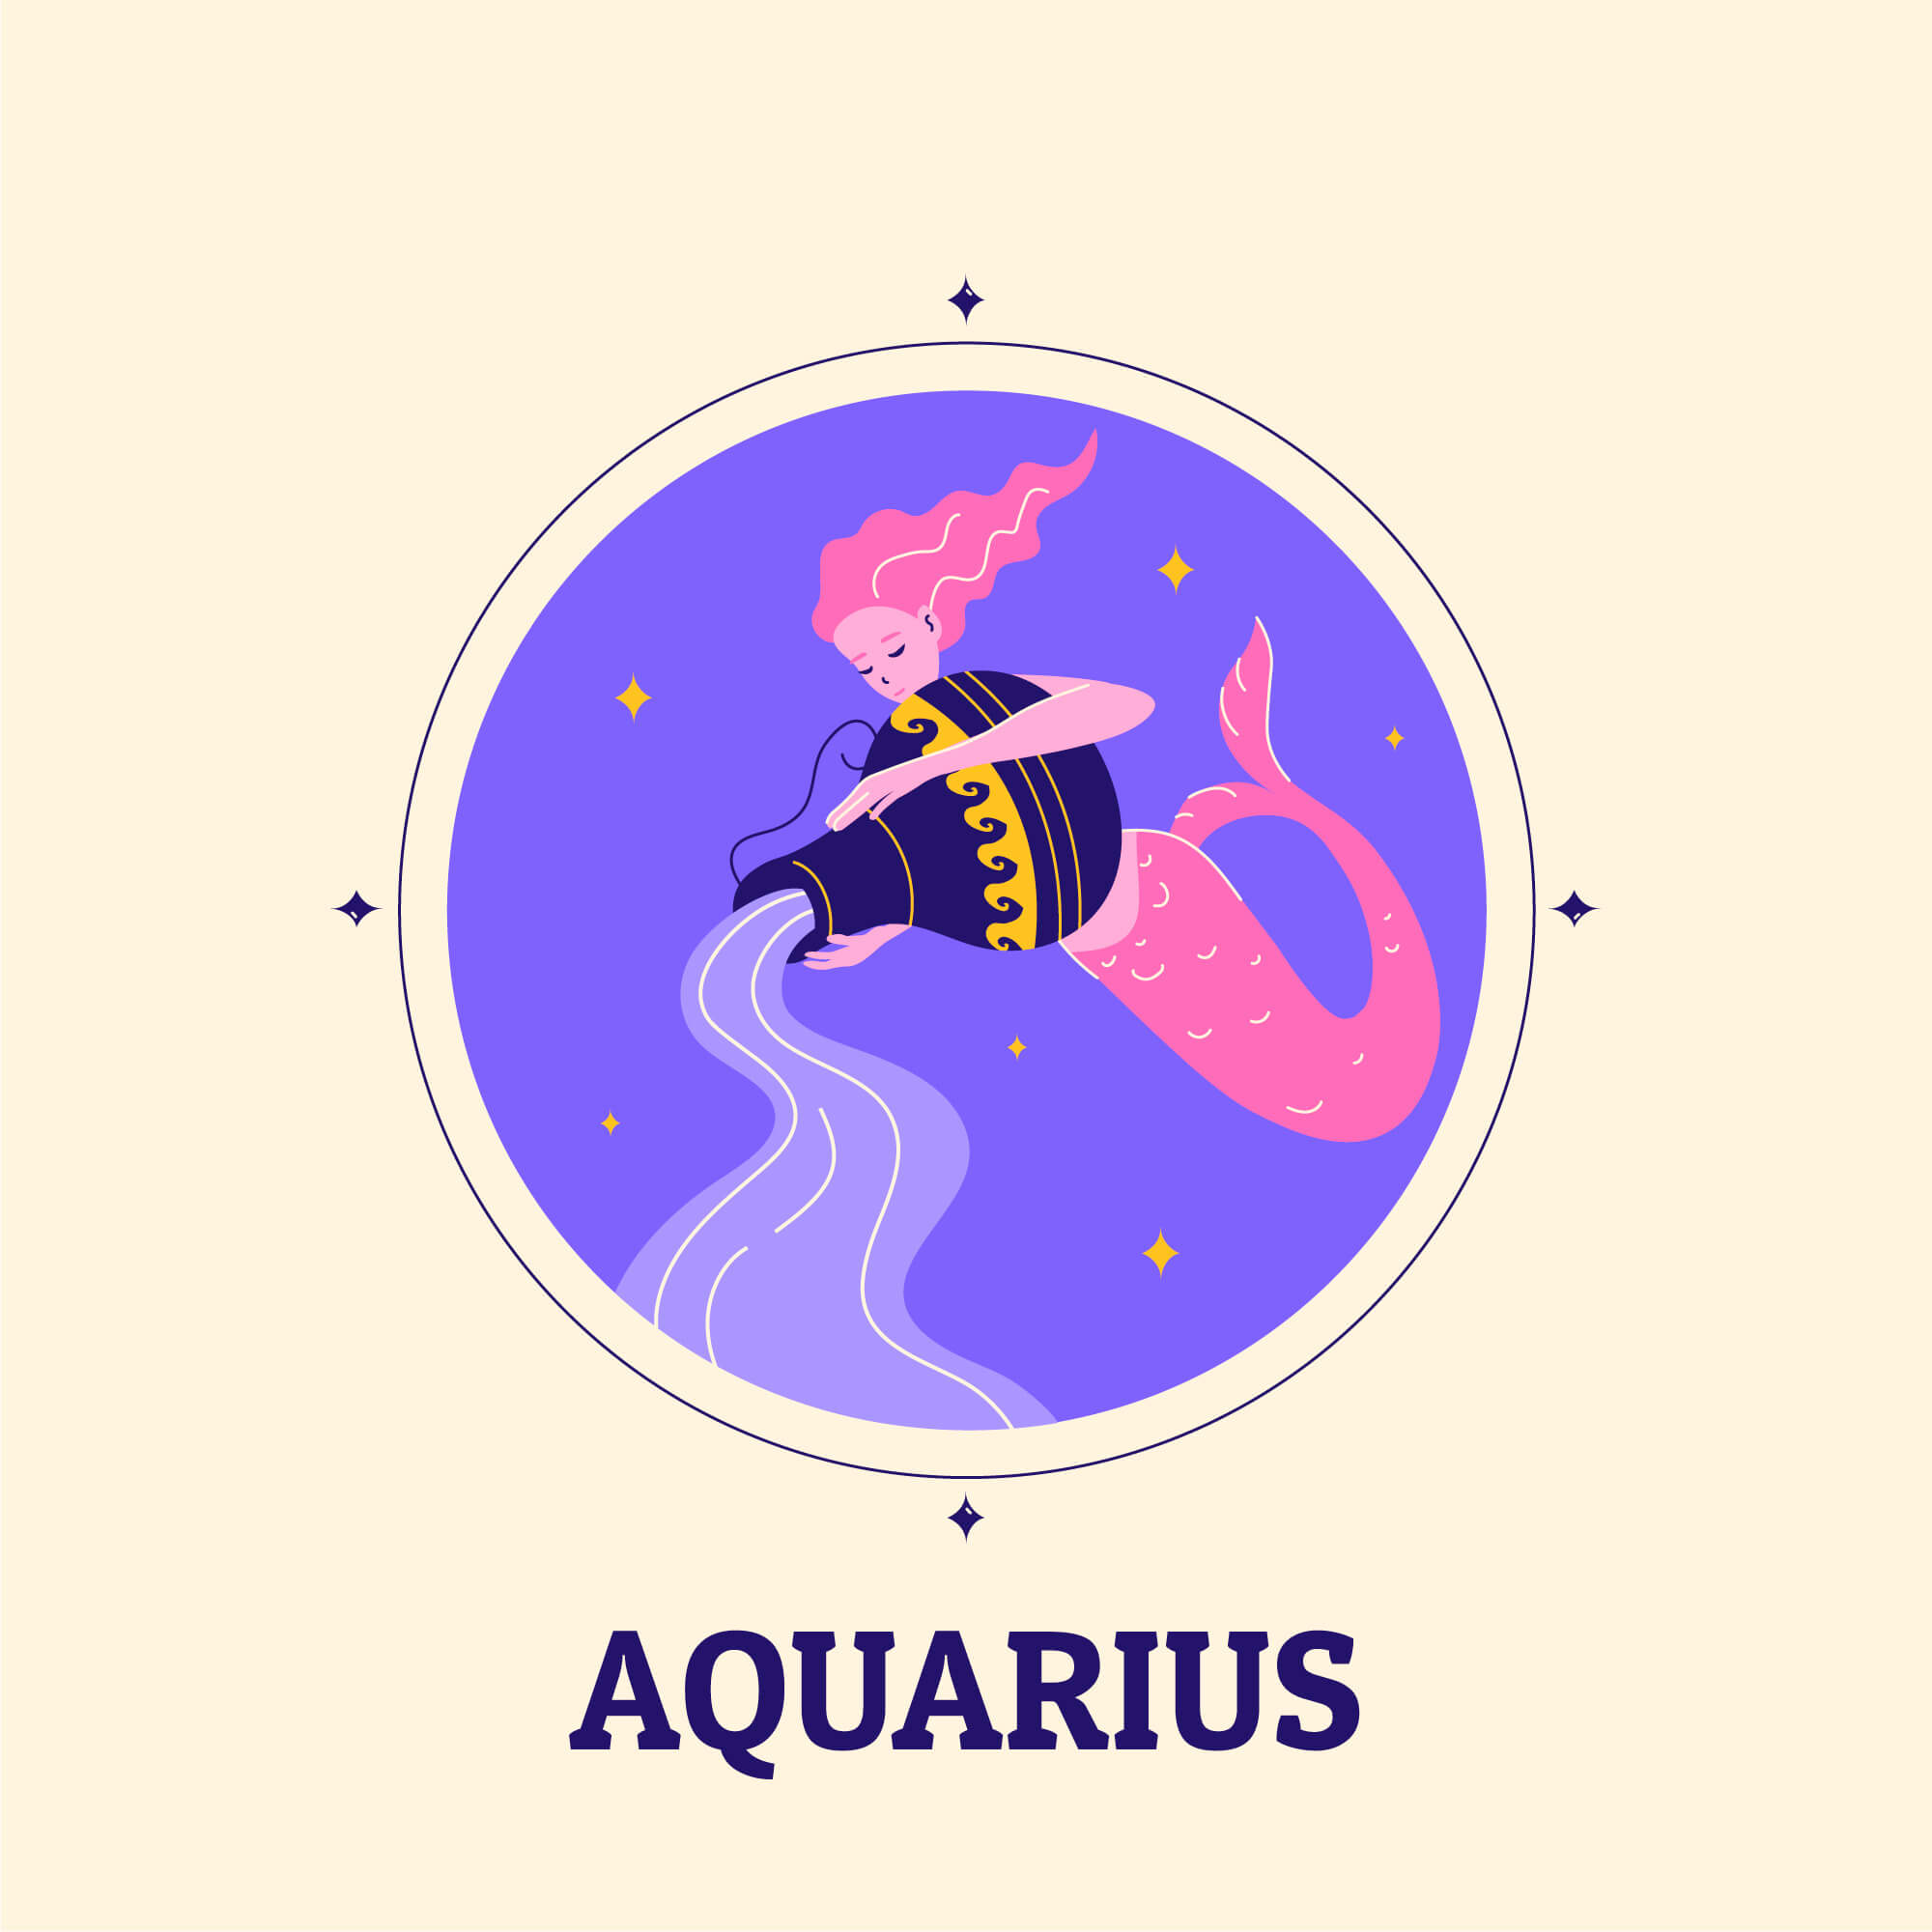 aquarius image